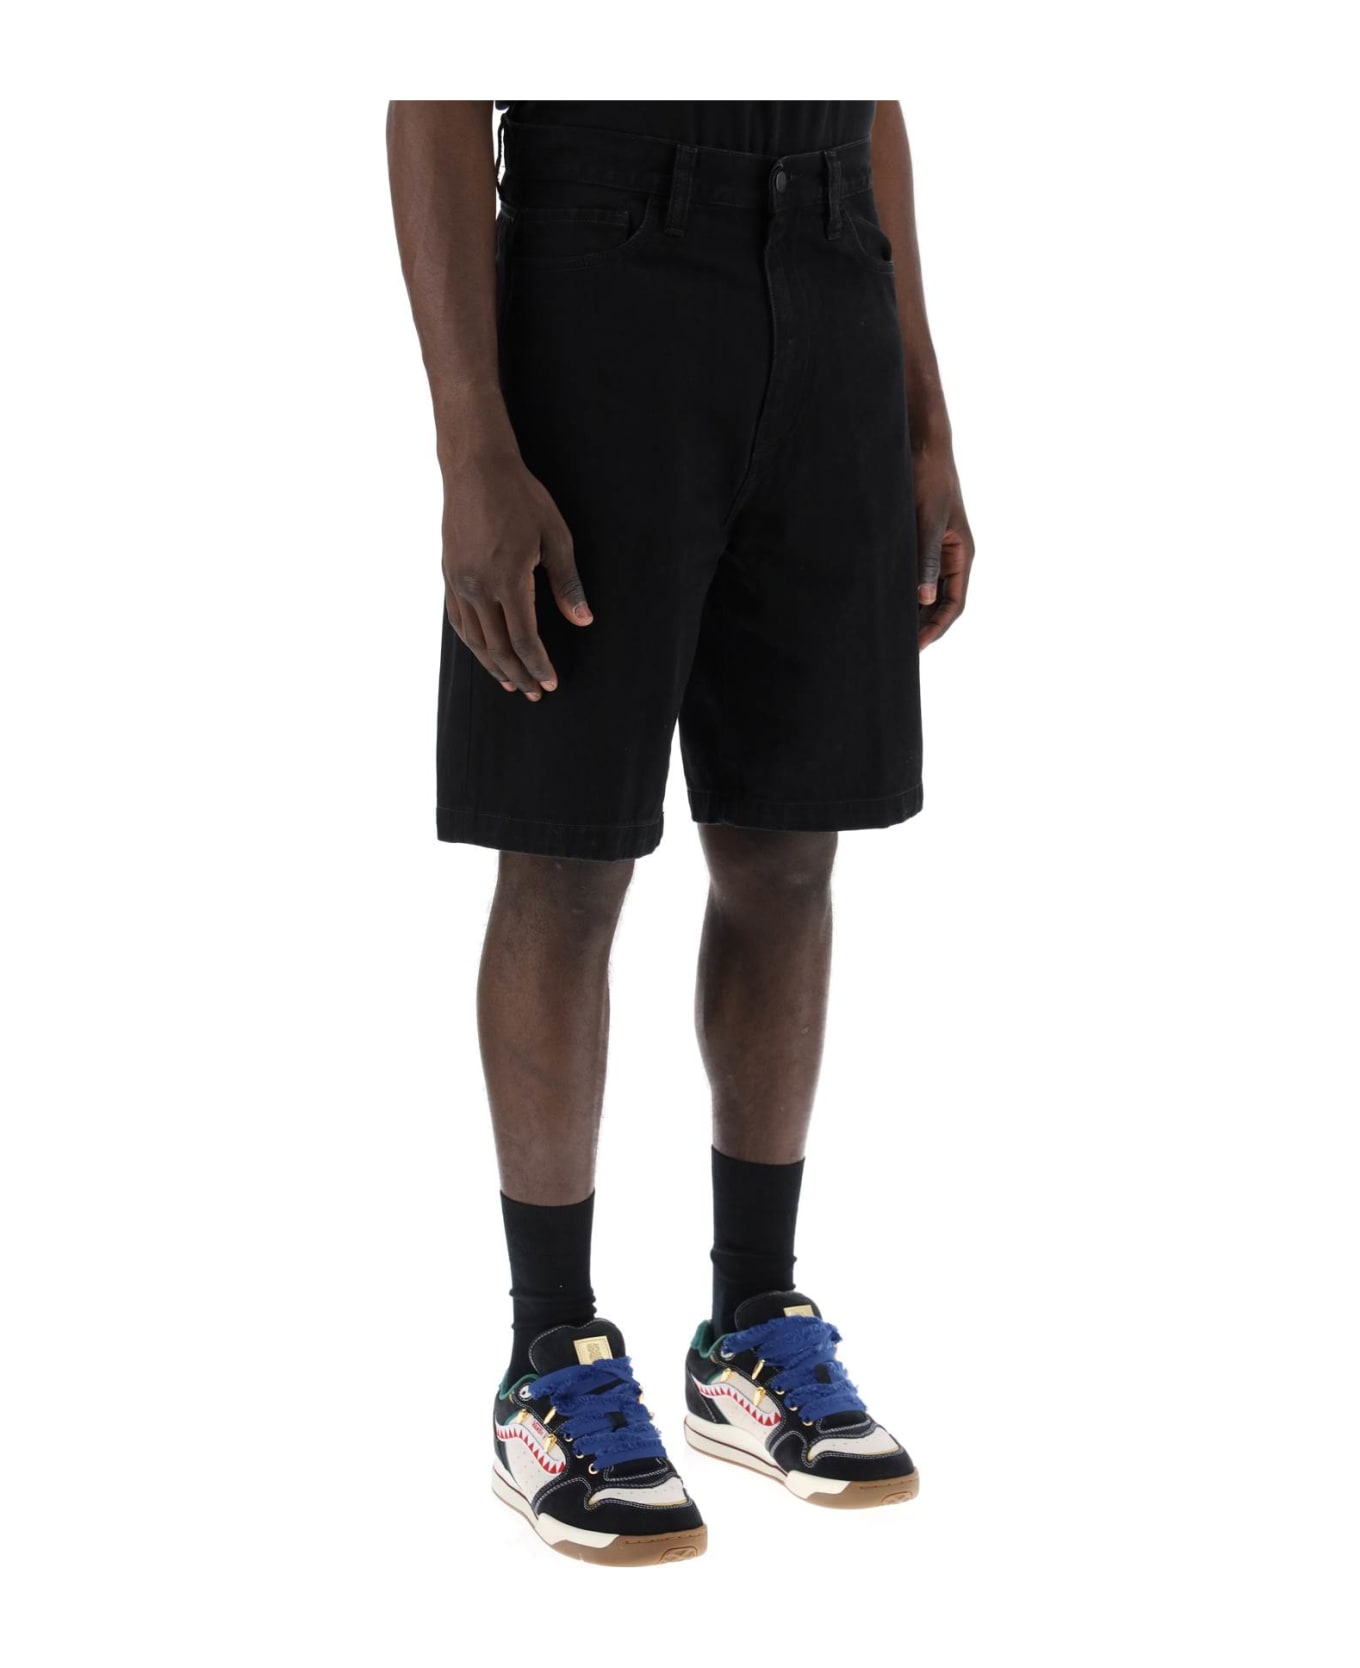 Carhartt Landon Denim Shorts - BLACK (Black)